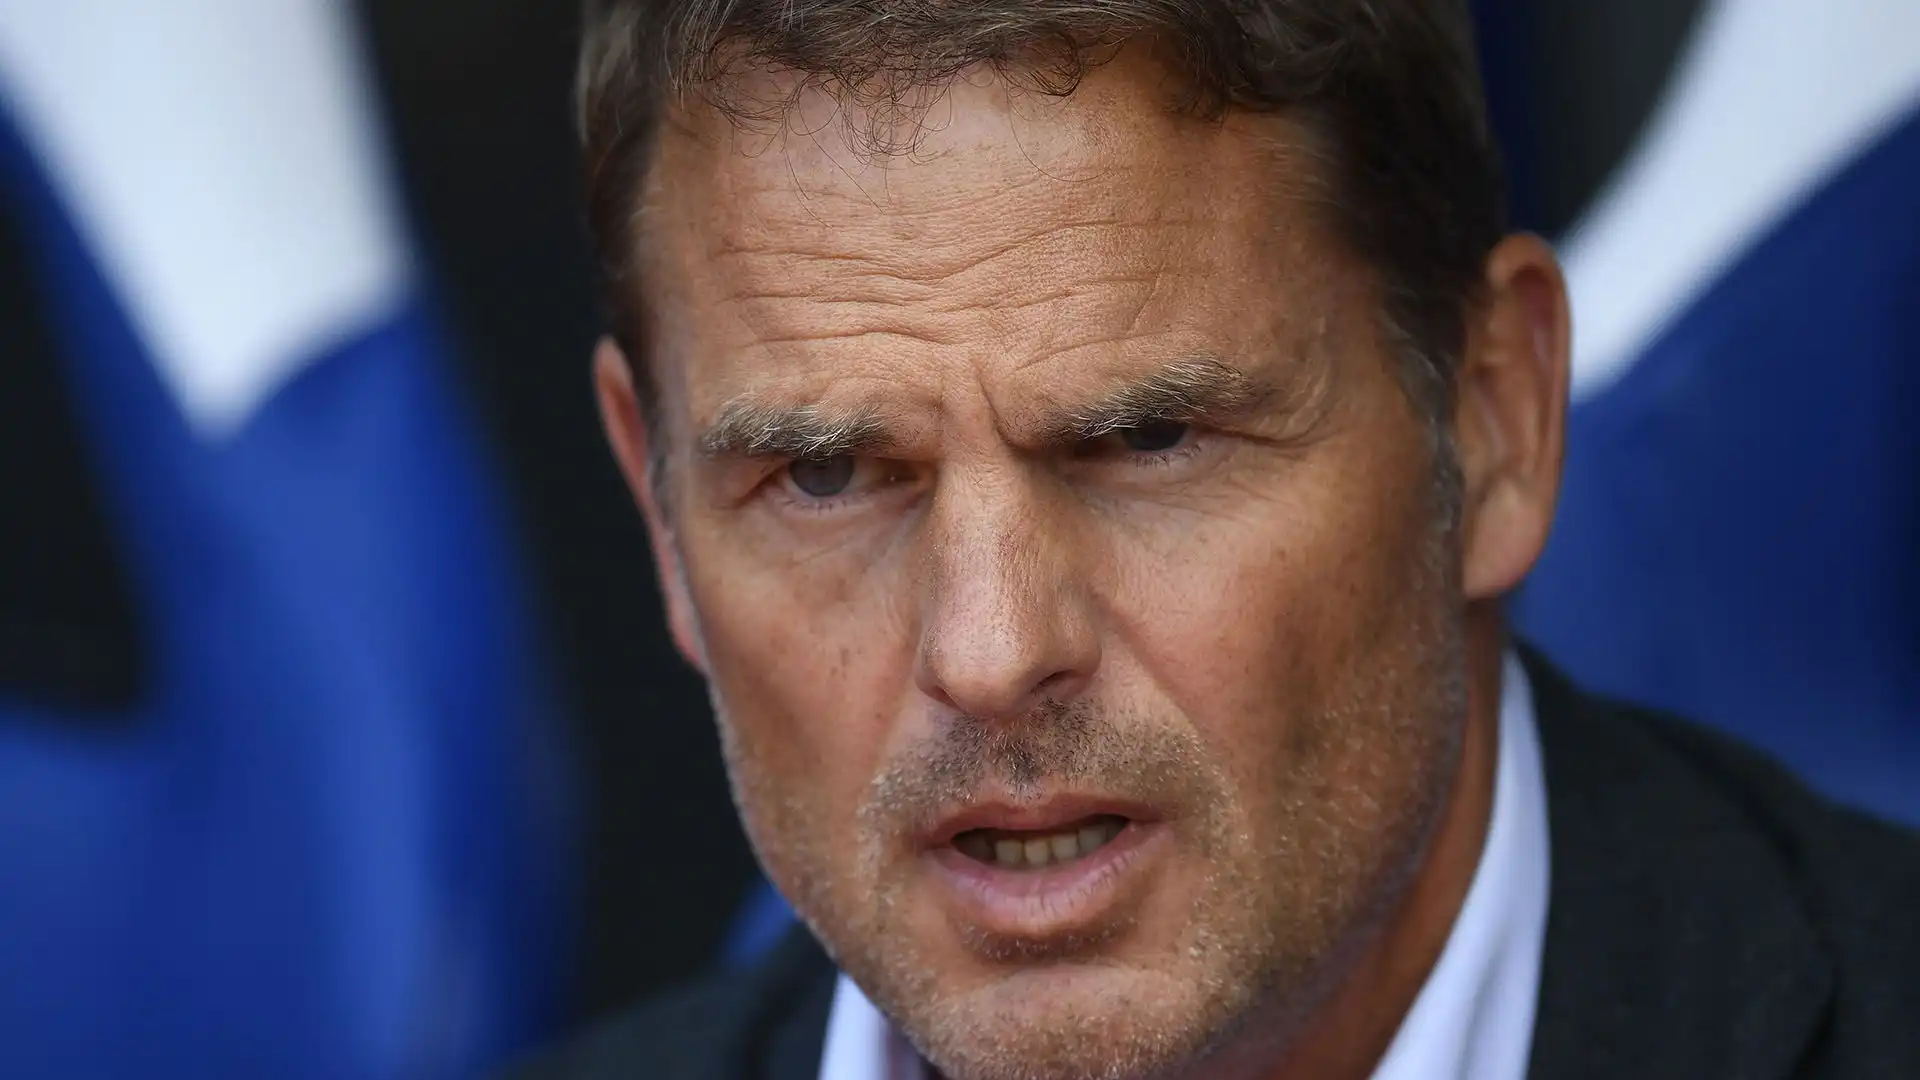 L'allenatore olandese lascia l'Al Jazira al settimo posto con appena 14 punti raccolti in 10 giornate